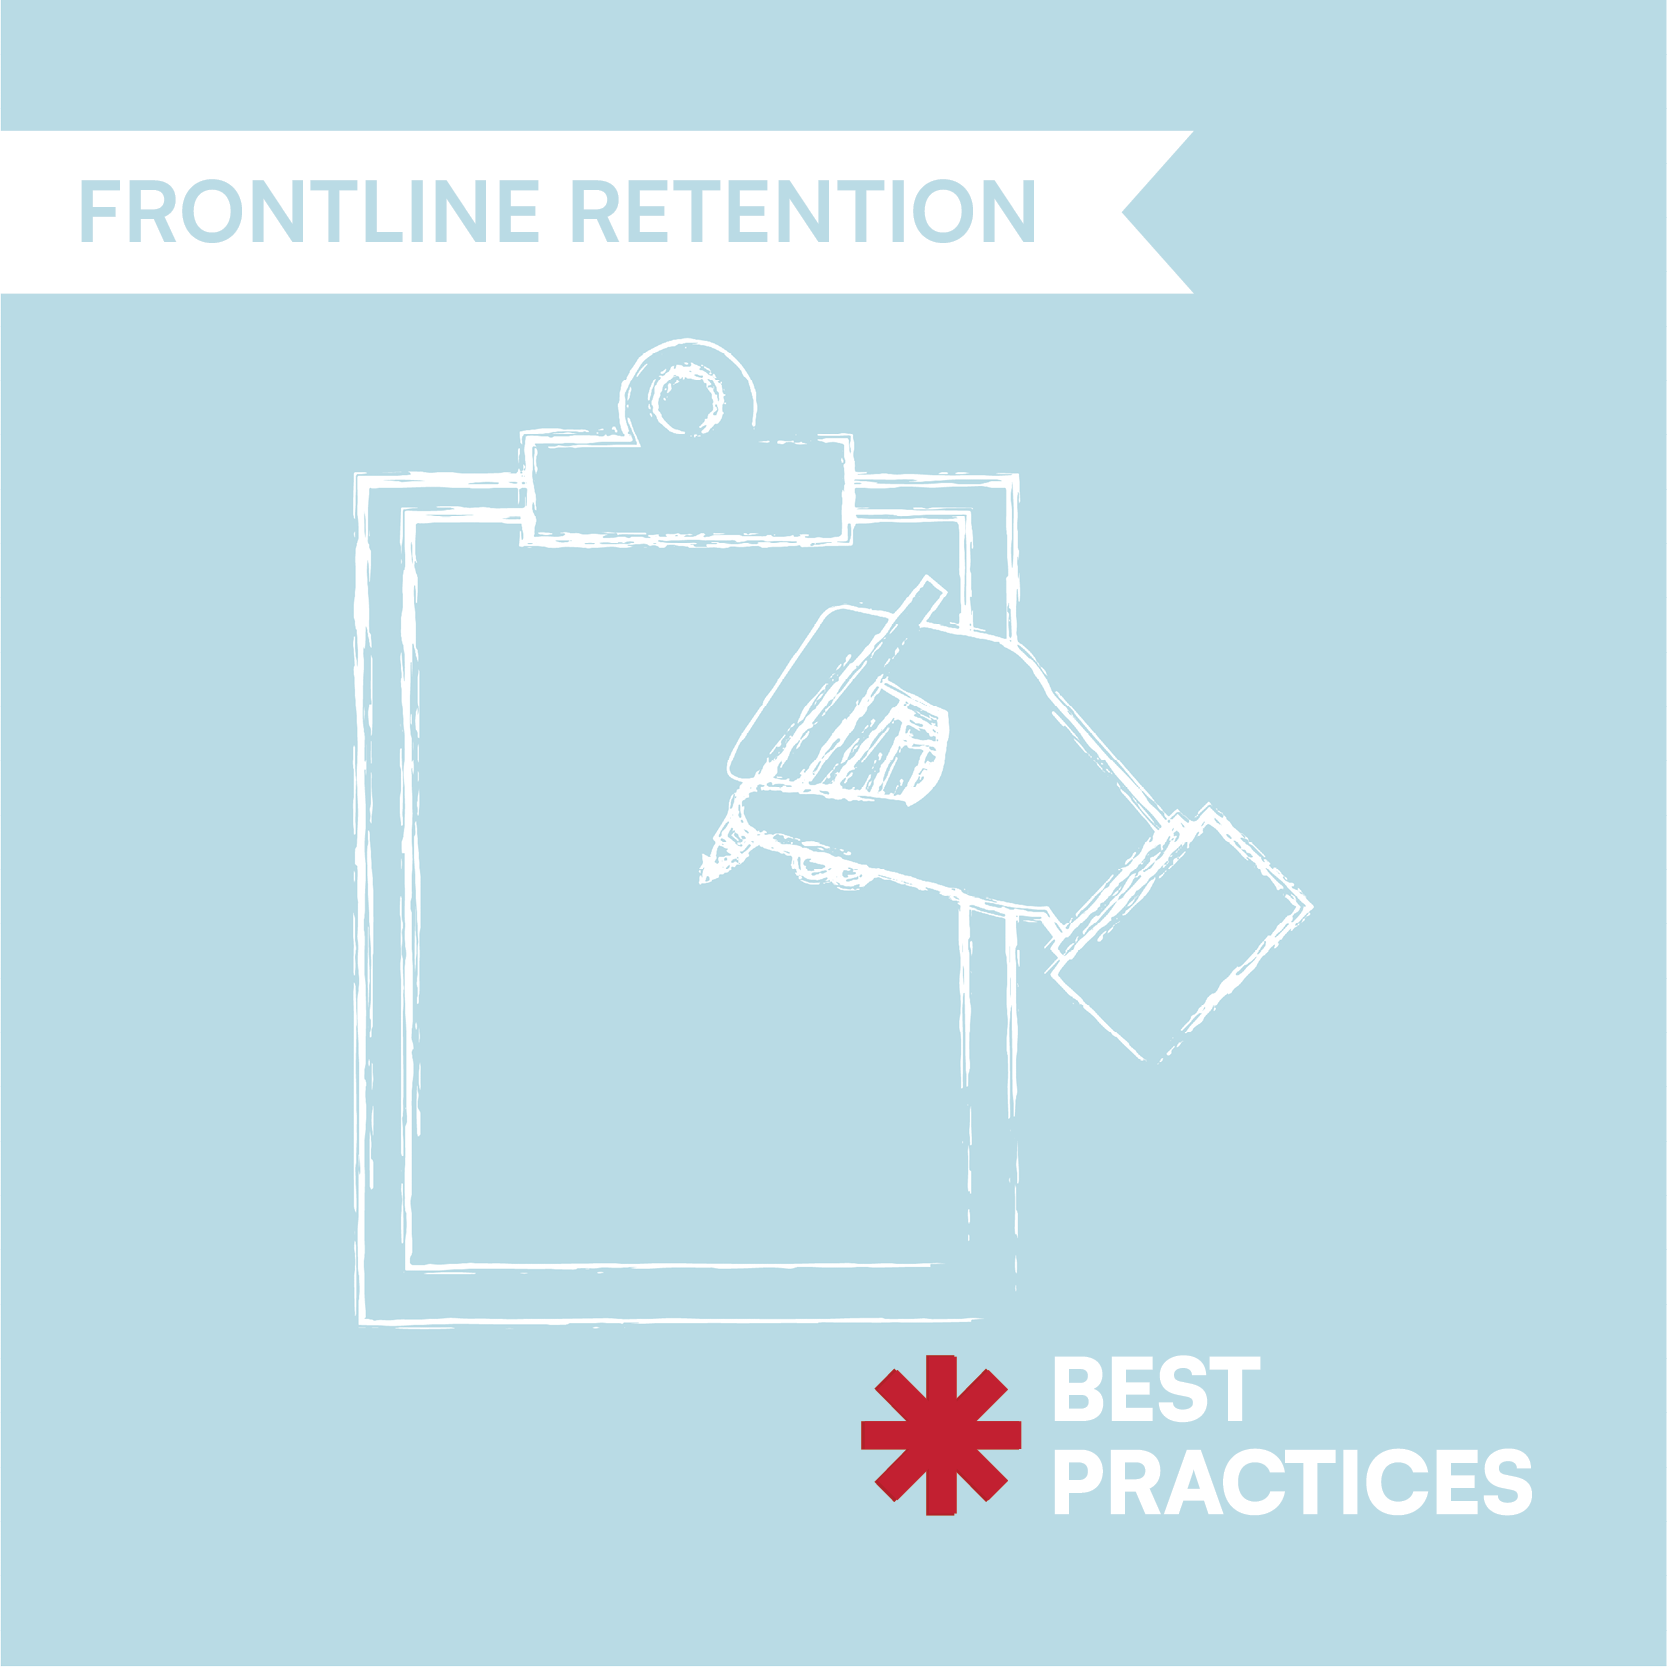 Best Practices: HR Communications